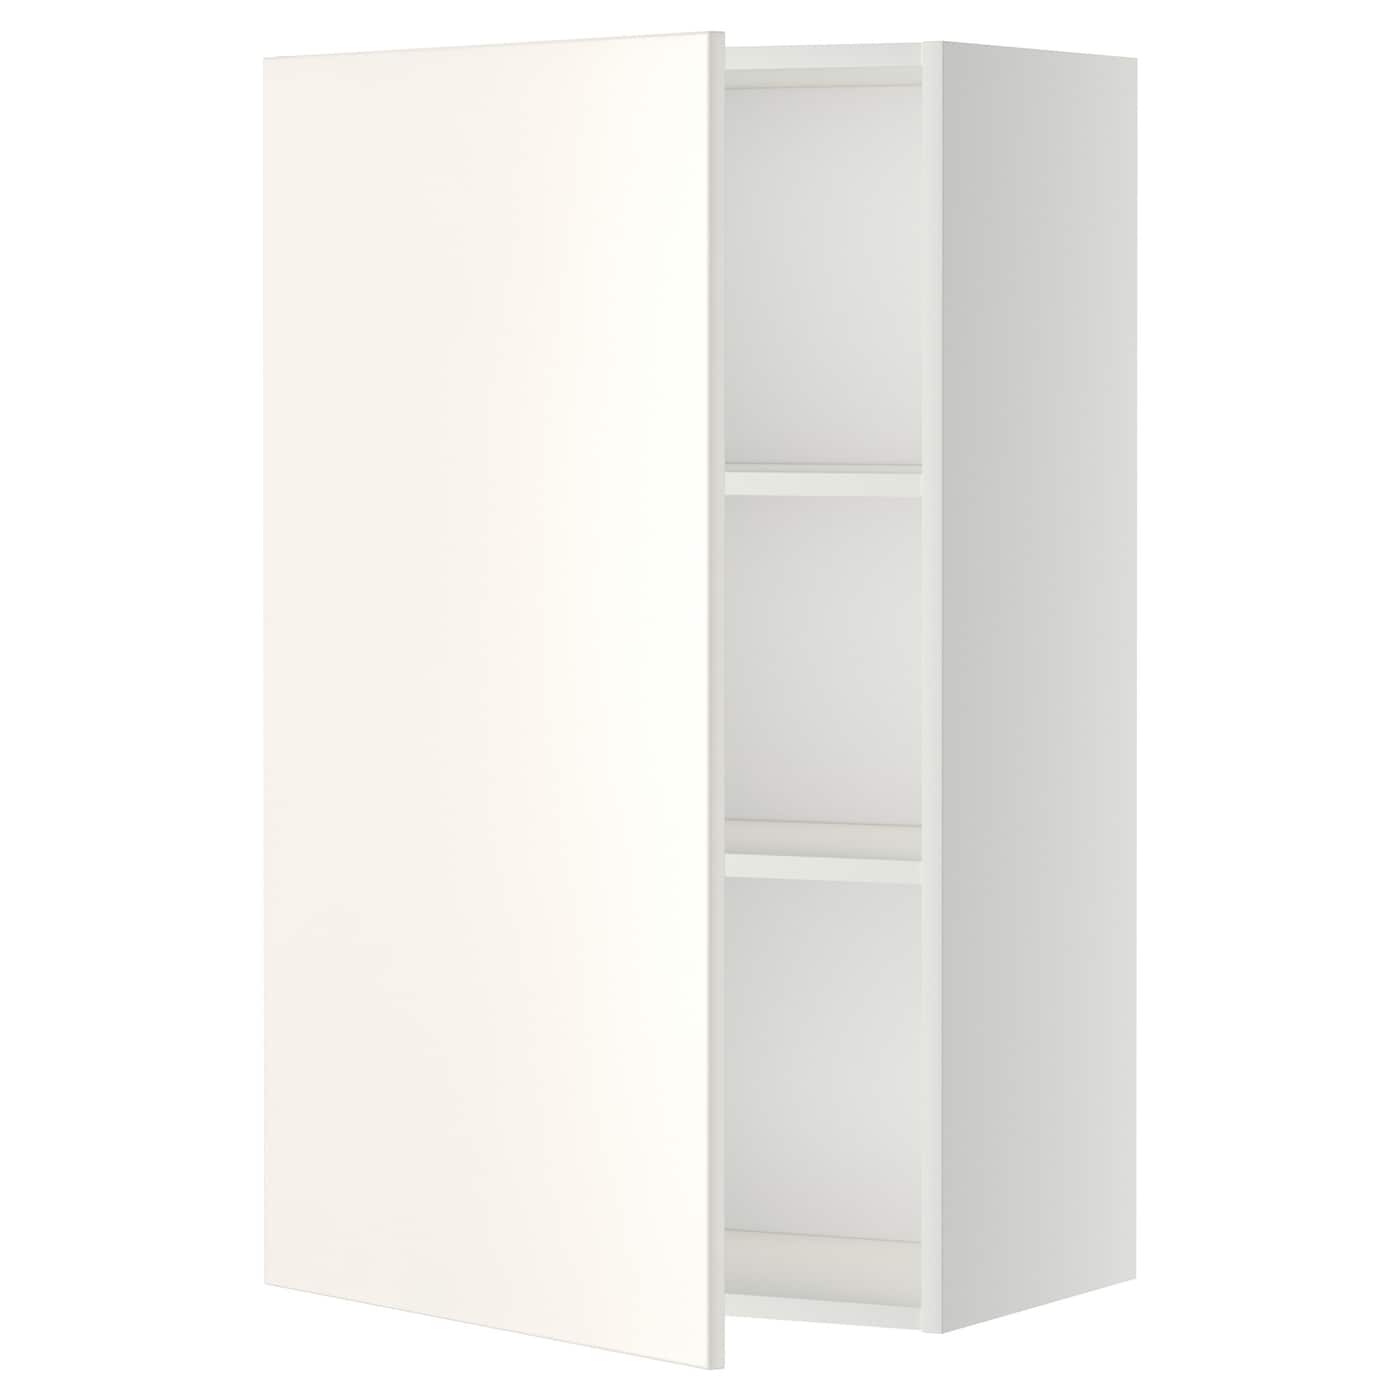 Навесной шкаф с полкой - METOD IKEA/ МЕТОД ИКЕА, 60х100 см, белый/светло-бежевый